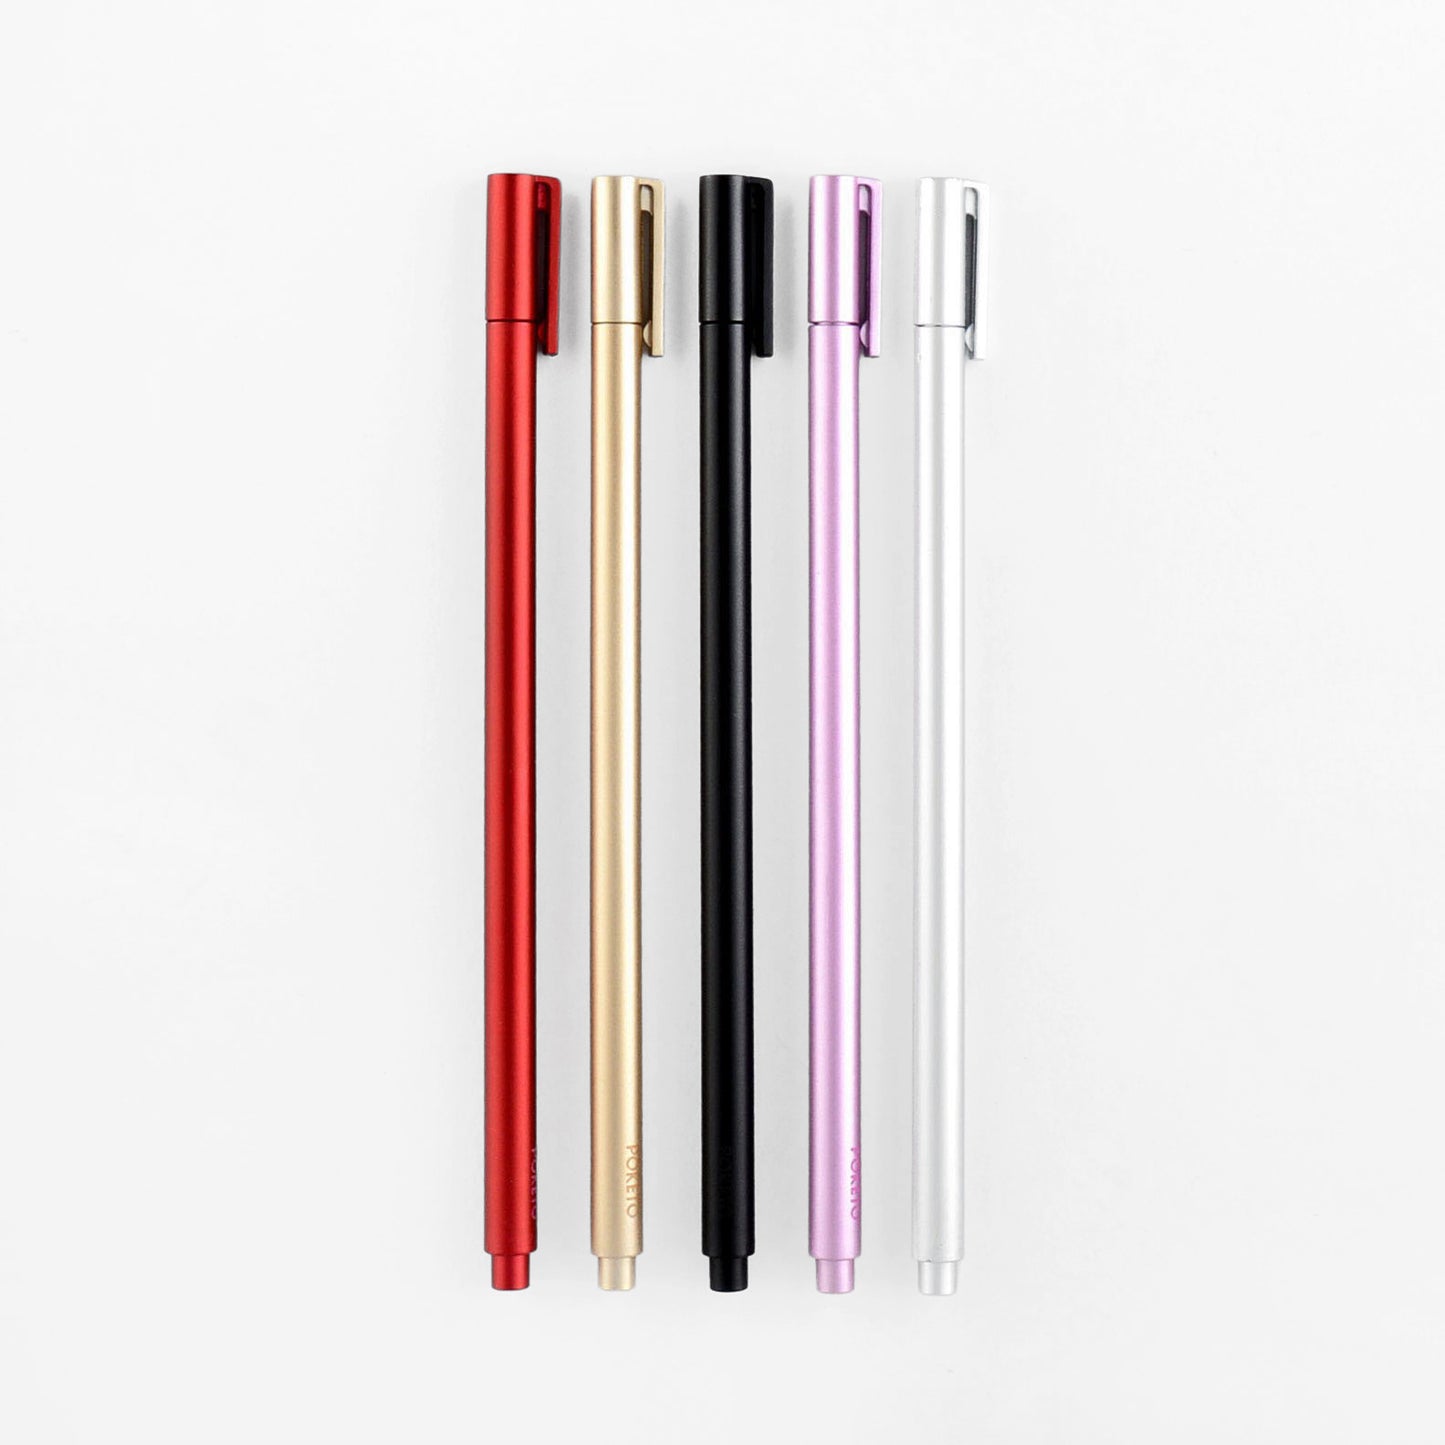 Poketo Apex Rollerball Pens | In Five Colors 